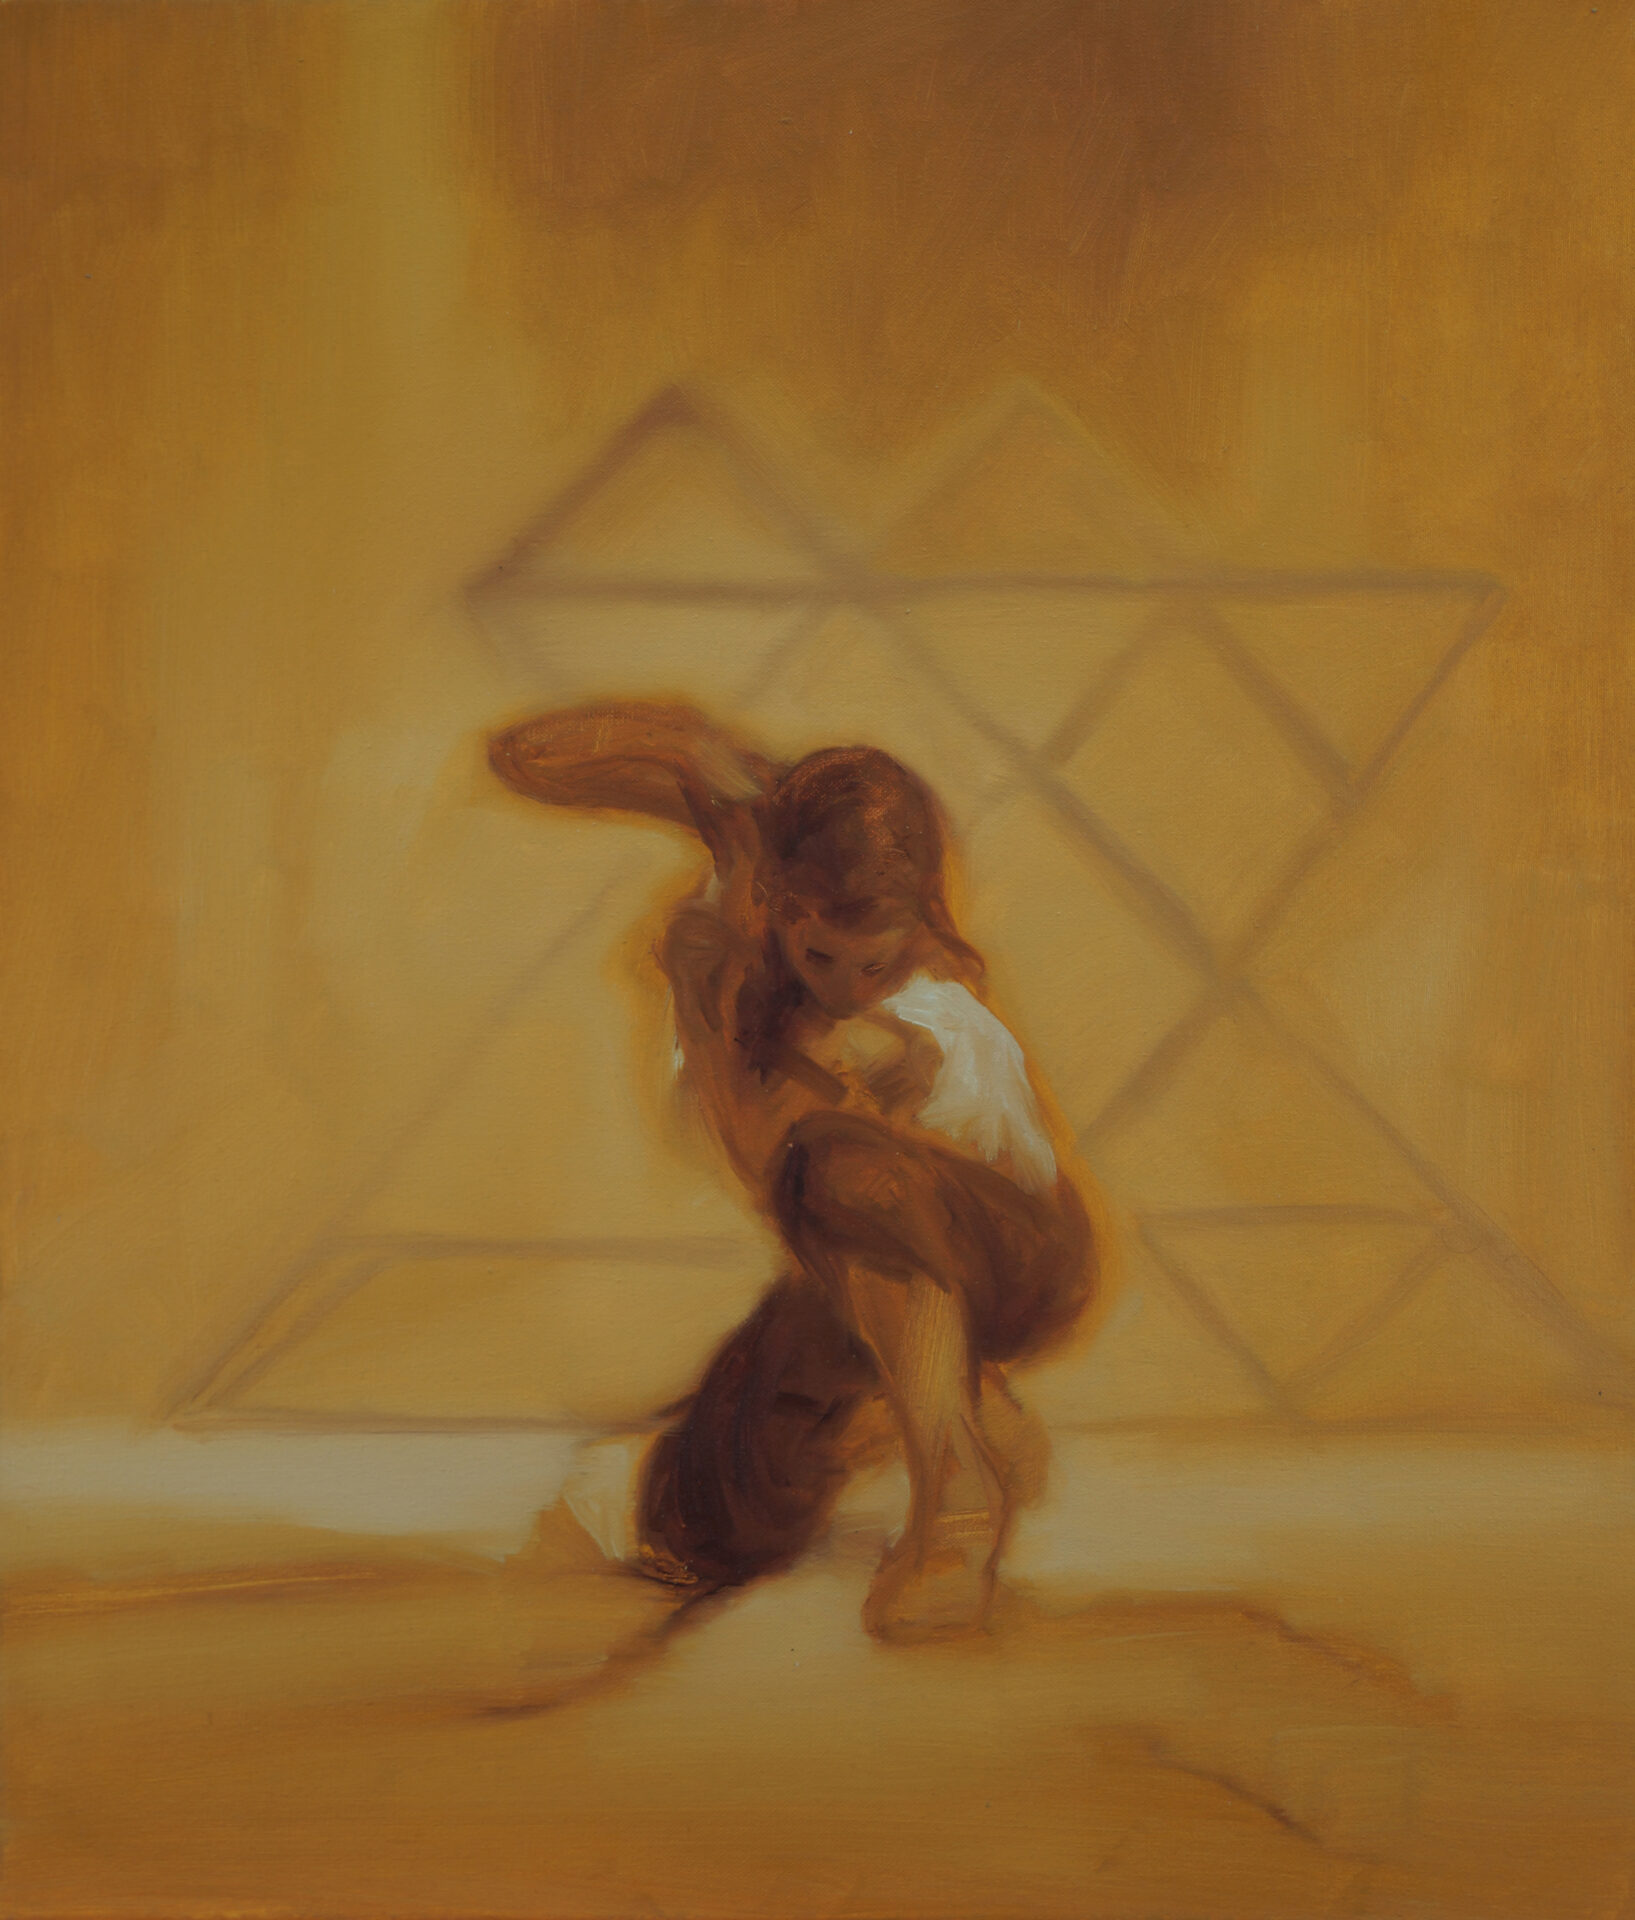 Daniel Beer, SCENIC 20-6, 60 x 50 cm, Öl auf Leinwand, 2020